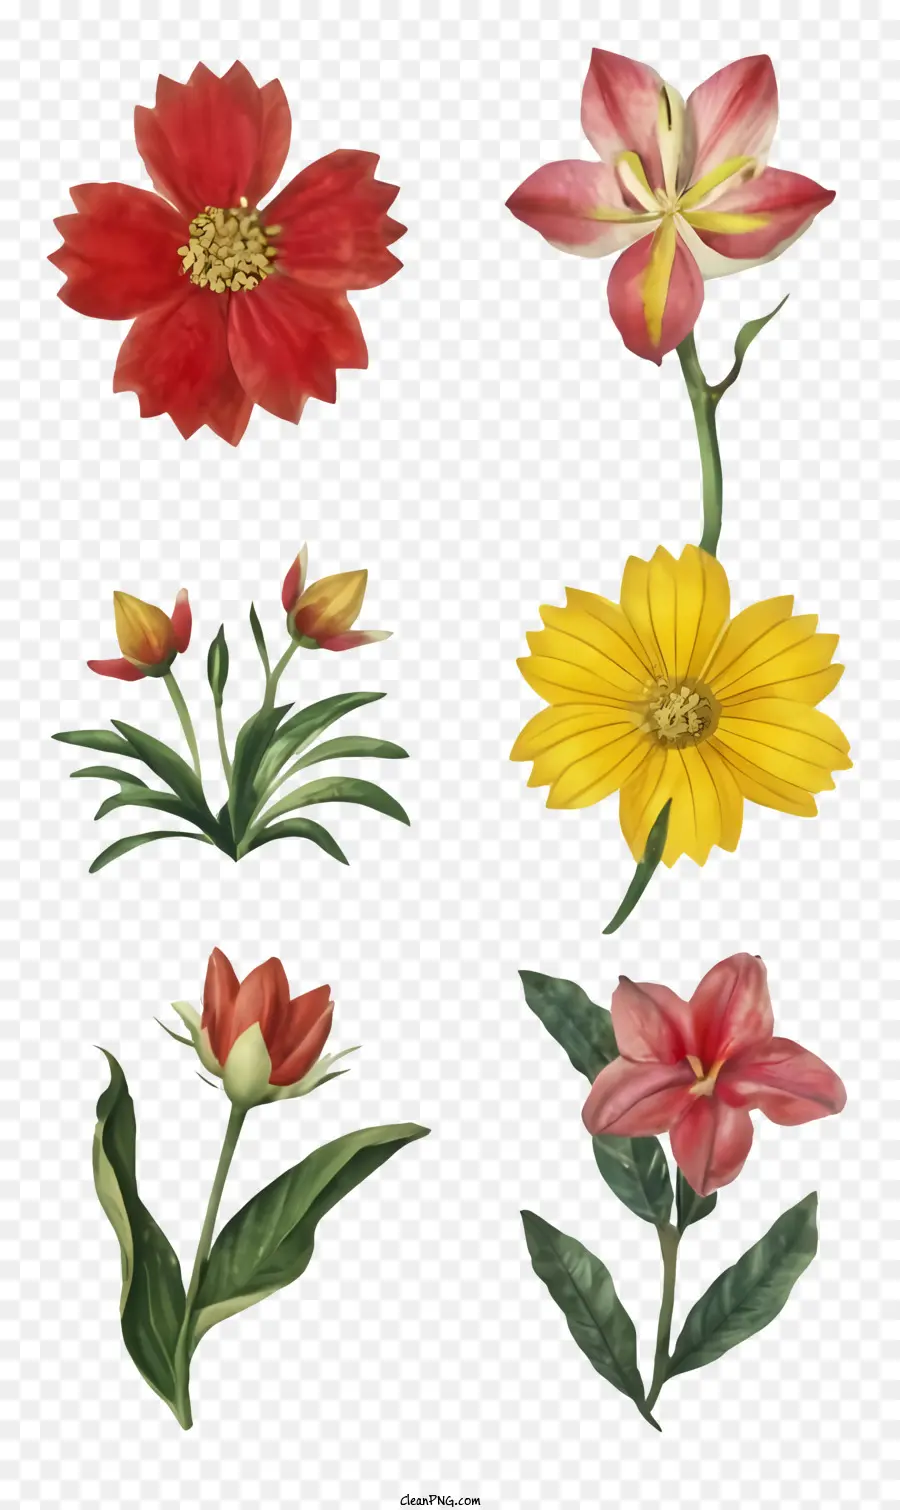 Blumenstrauß - Lebendiger Strauß frischer Blumen, die elegant angeordnet sind